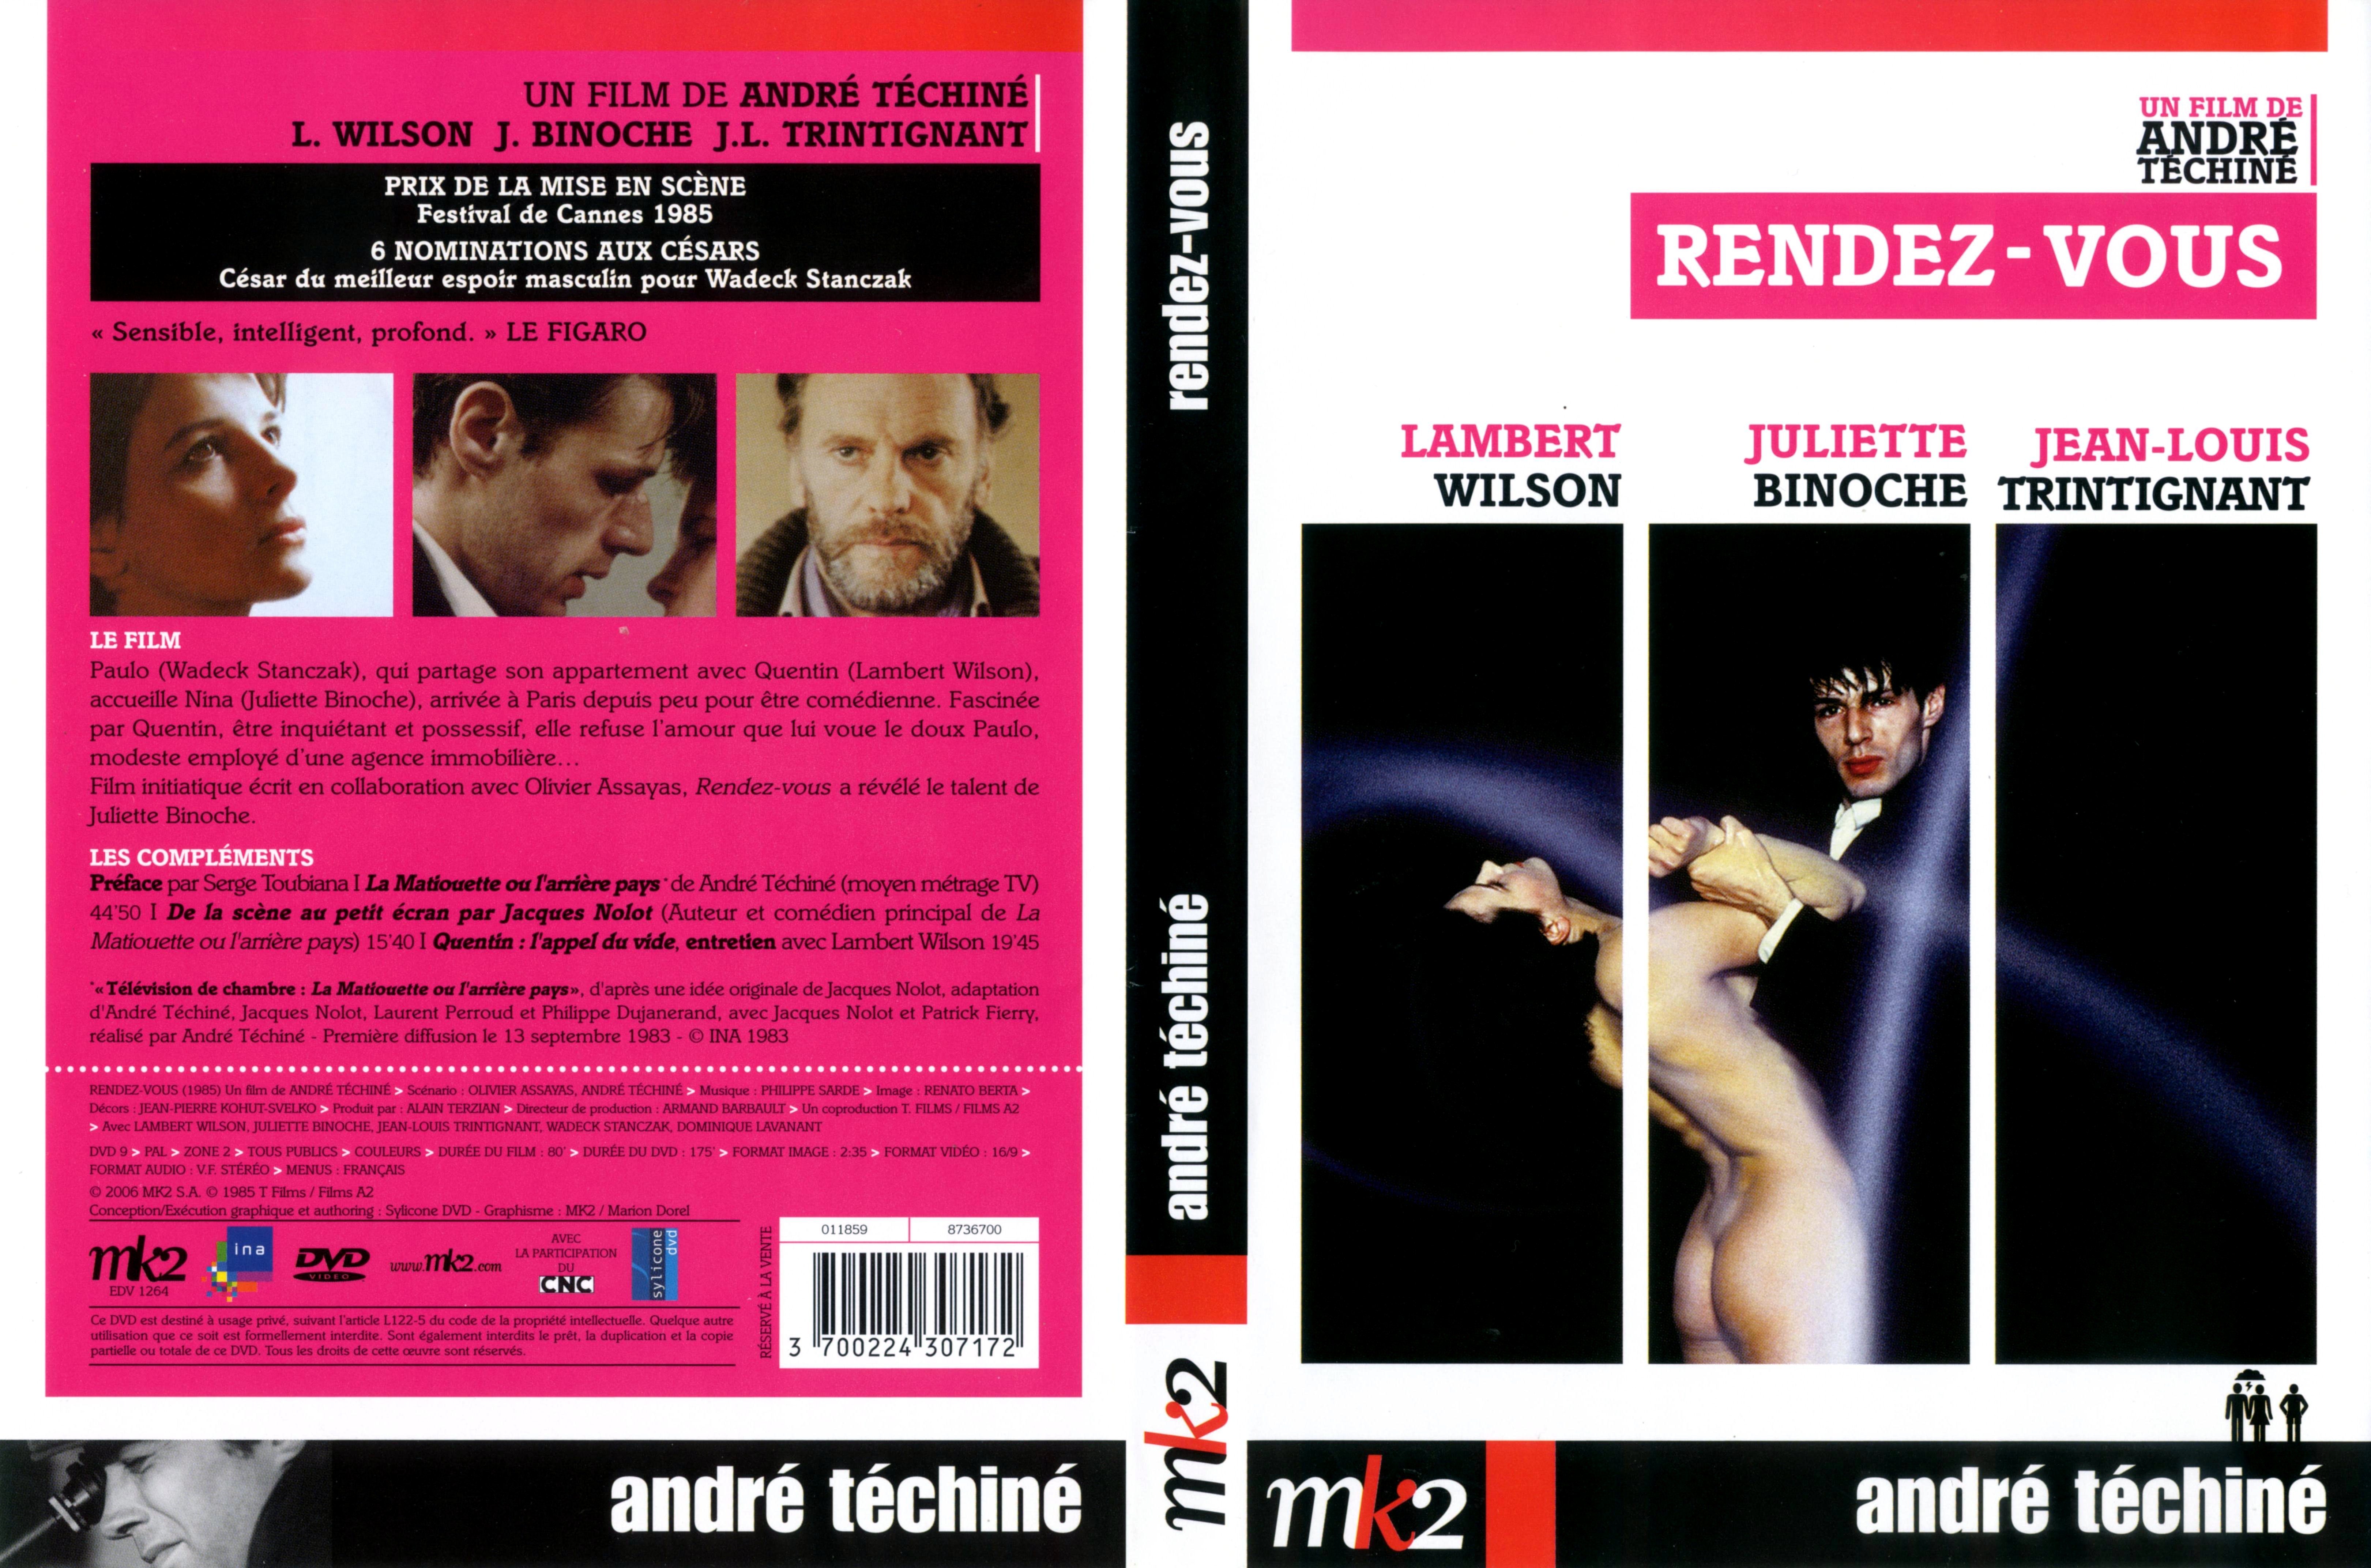 Jaquette DVD Rendez-vous (1985)